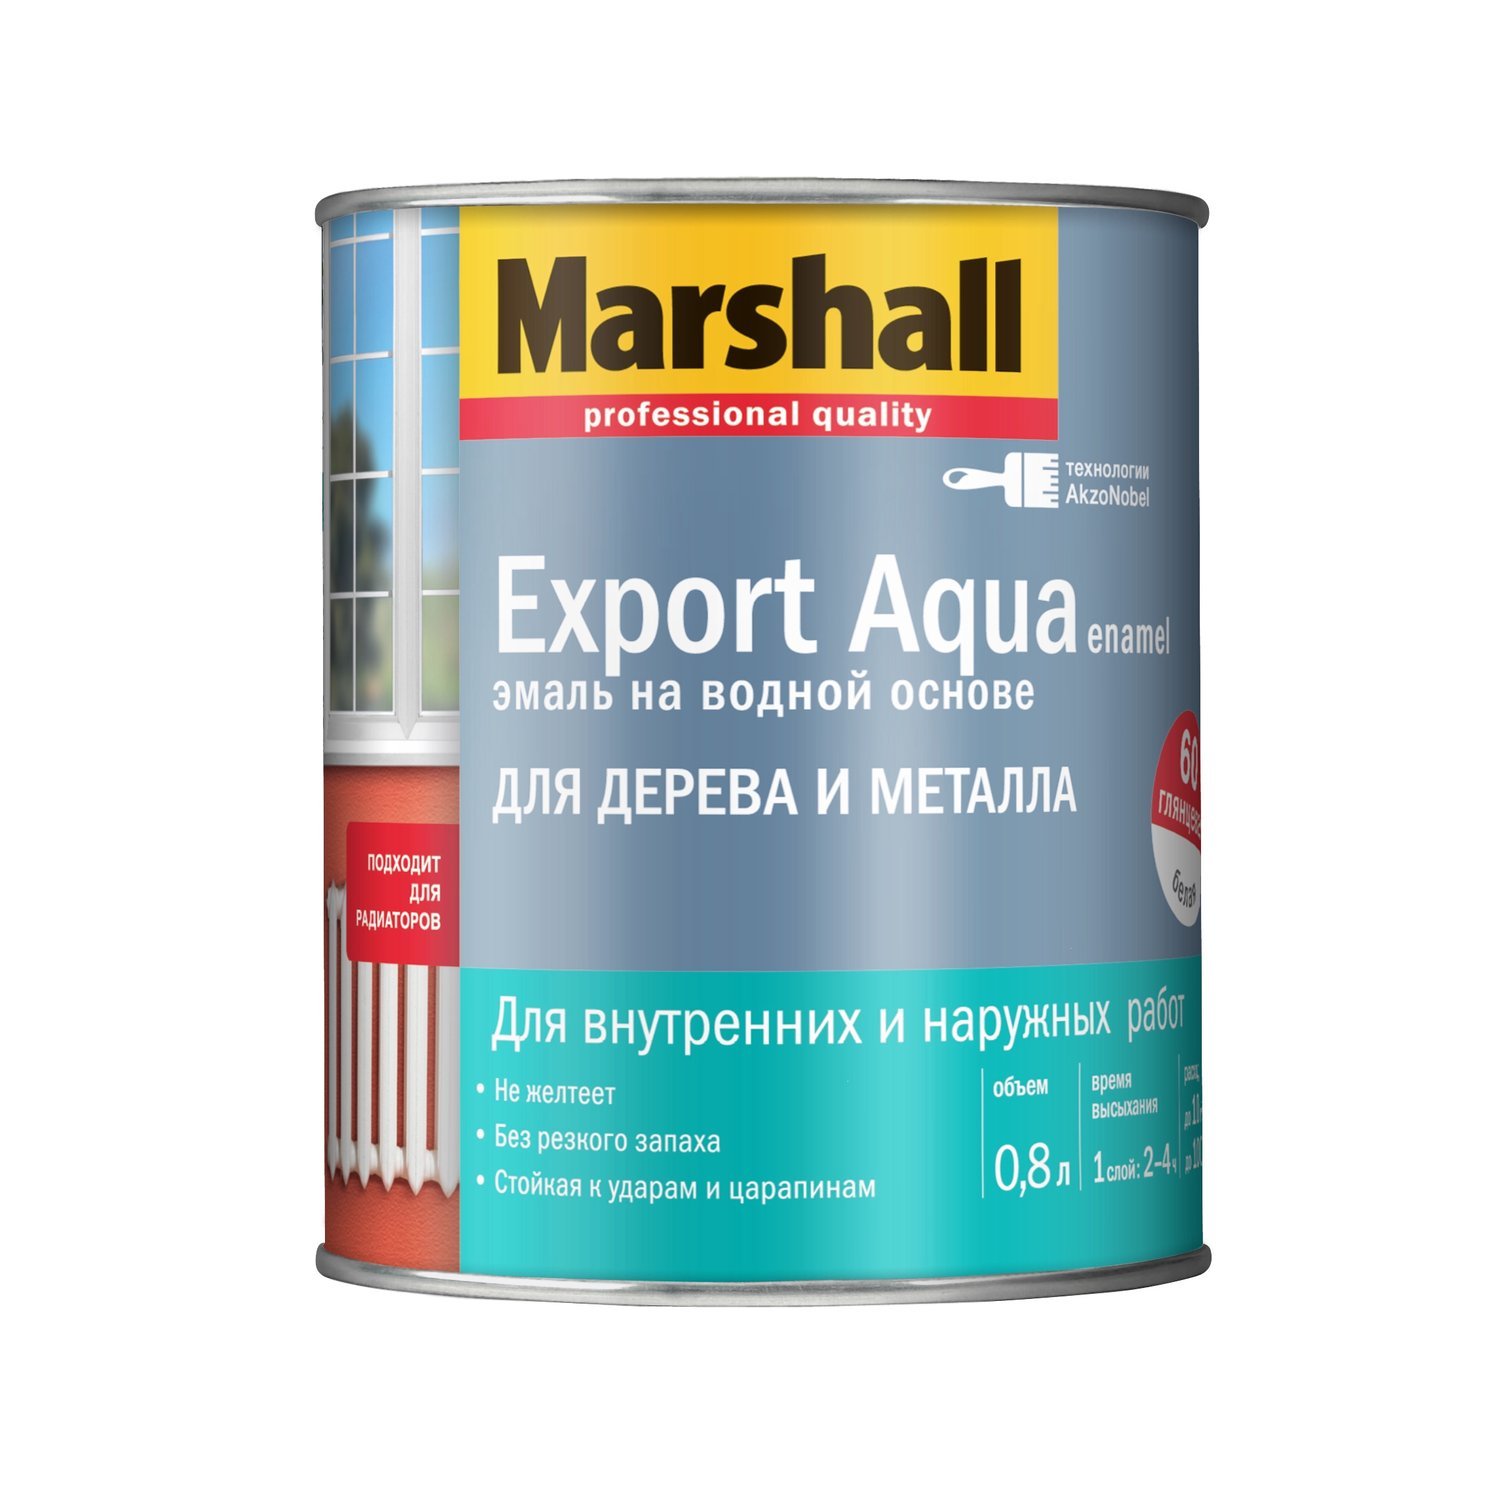 <span style="font-style: italic;">Эмаль на водной основе для дерева и металла белая полуматовая. Marshall Export Aqua</span><br>